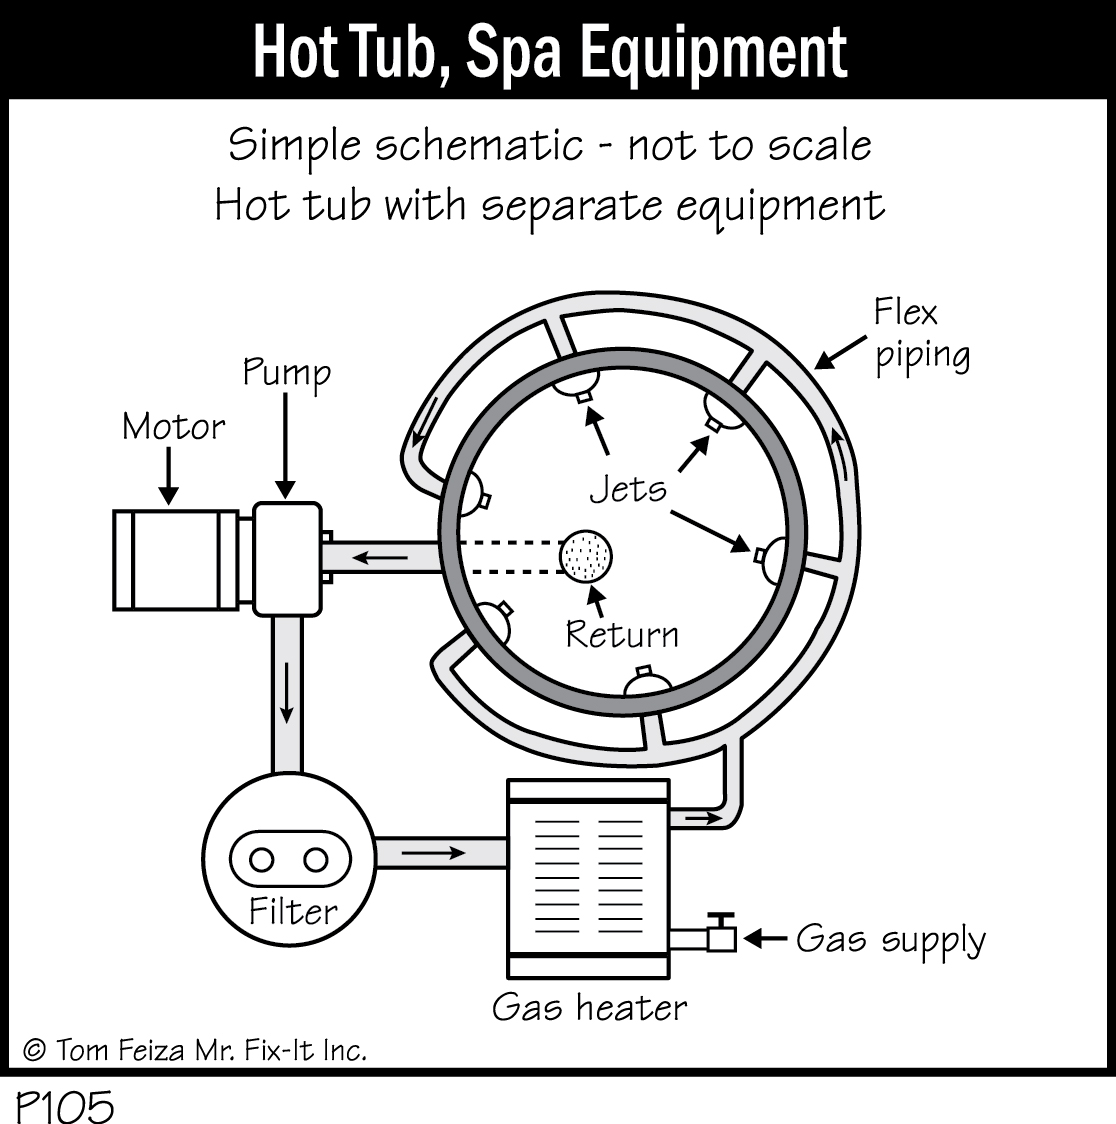 P105 - Hot Tub, Spa Equipment